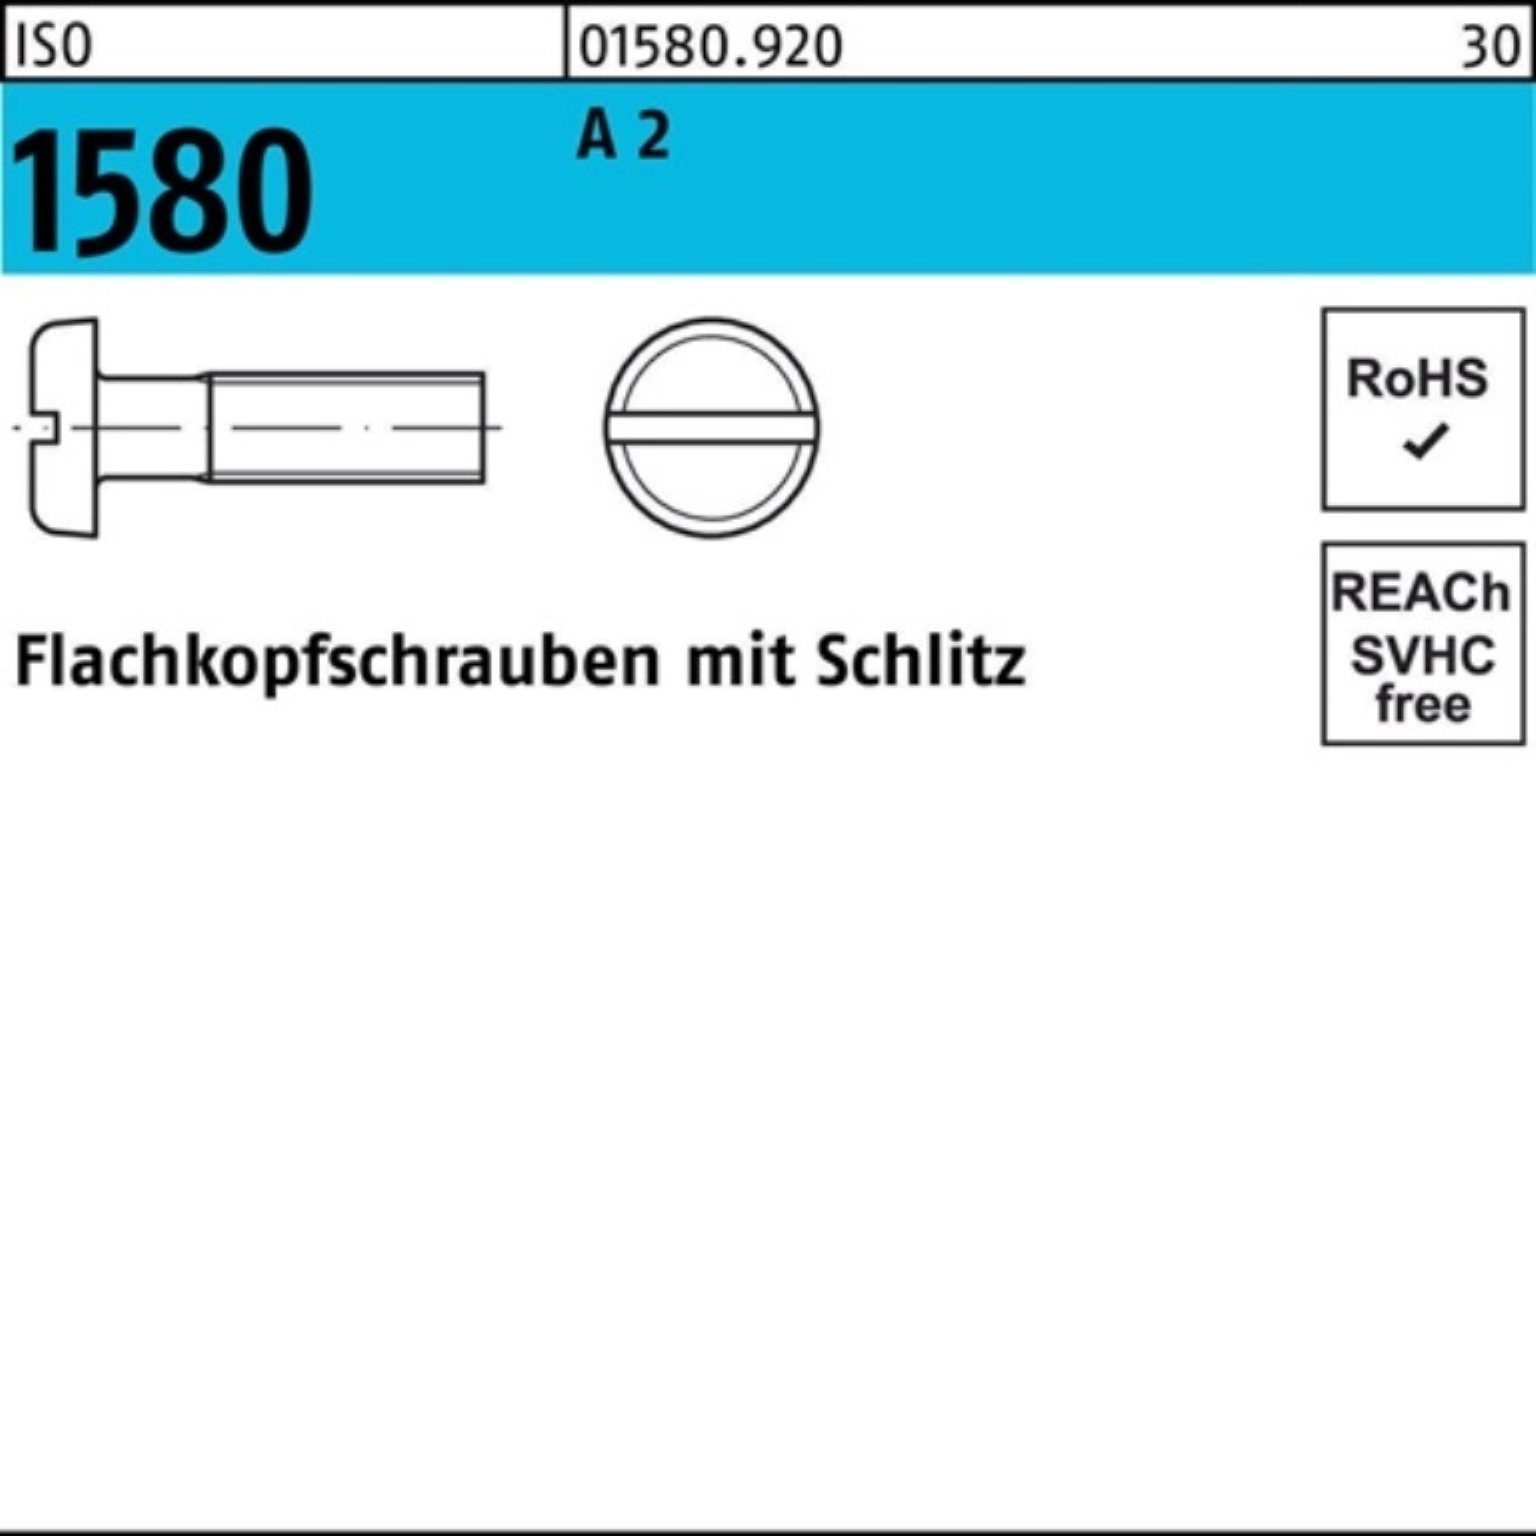 A M6x Flachkopfschraube Reyher 2 1580 IS Stück ISO 200er 200 Schraube Schlitz 60 Pack